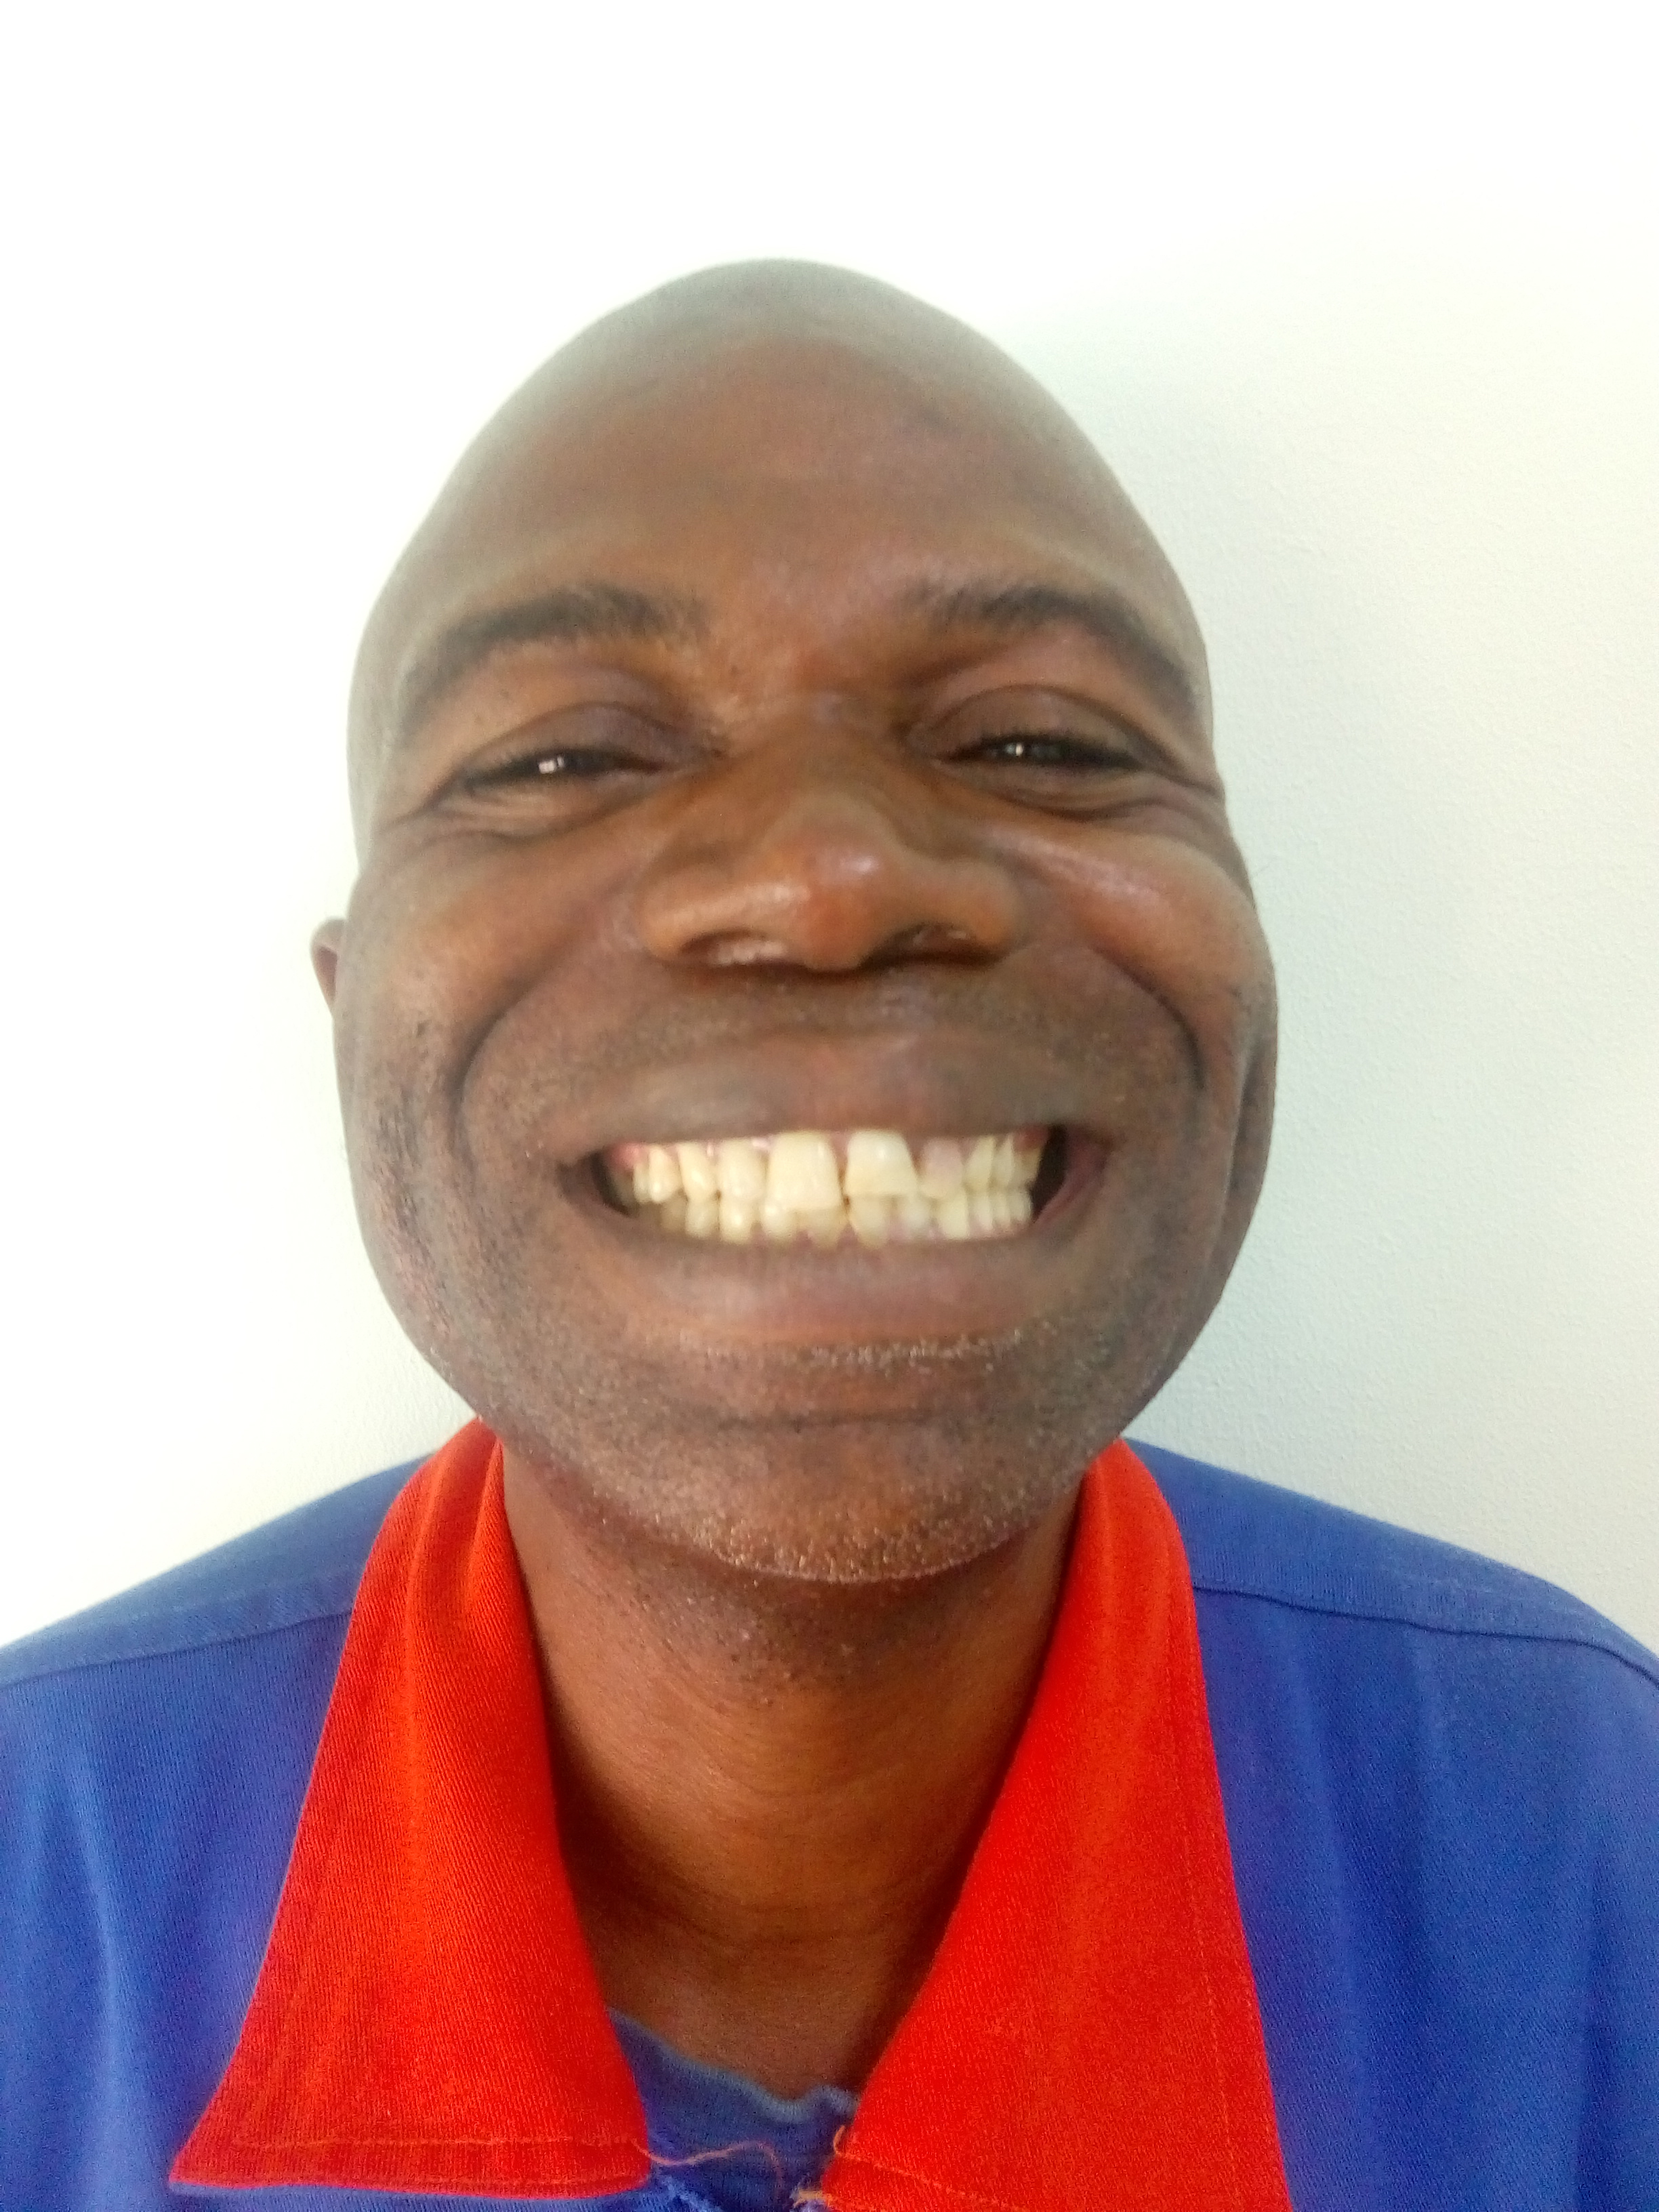 Big smile after dental treatment at Aller Aqua Zambia